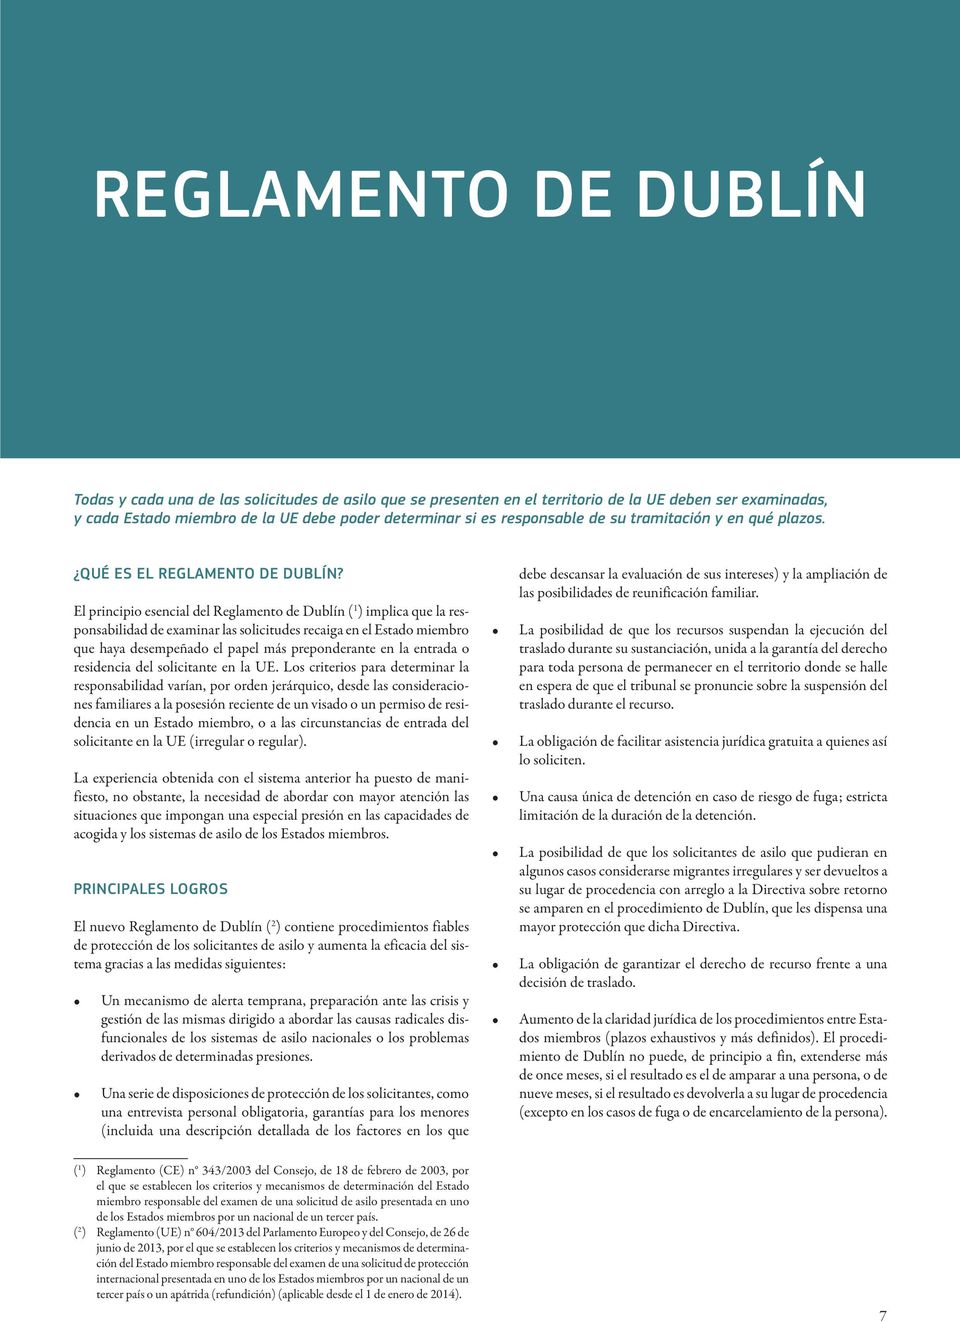 El principio esencial del Reglamento de Dublín ( 1 ) implica que la responsabilidad de examinar las solicitudes recaiga en el Estado miembro que haya desempeñado el papel más preponderante en la